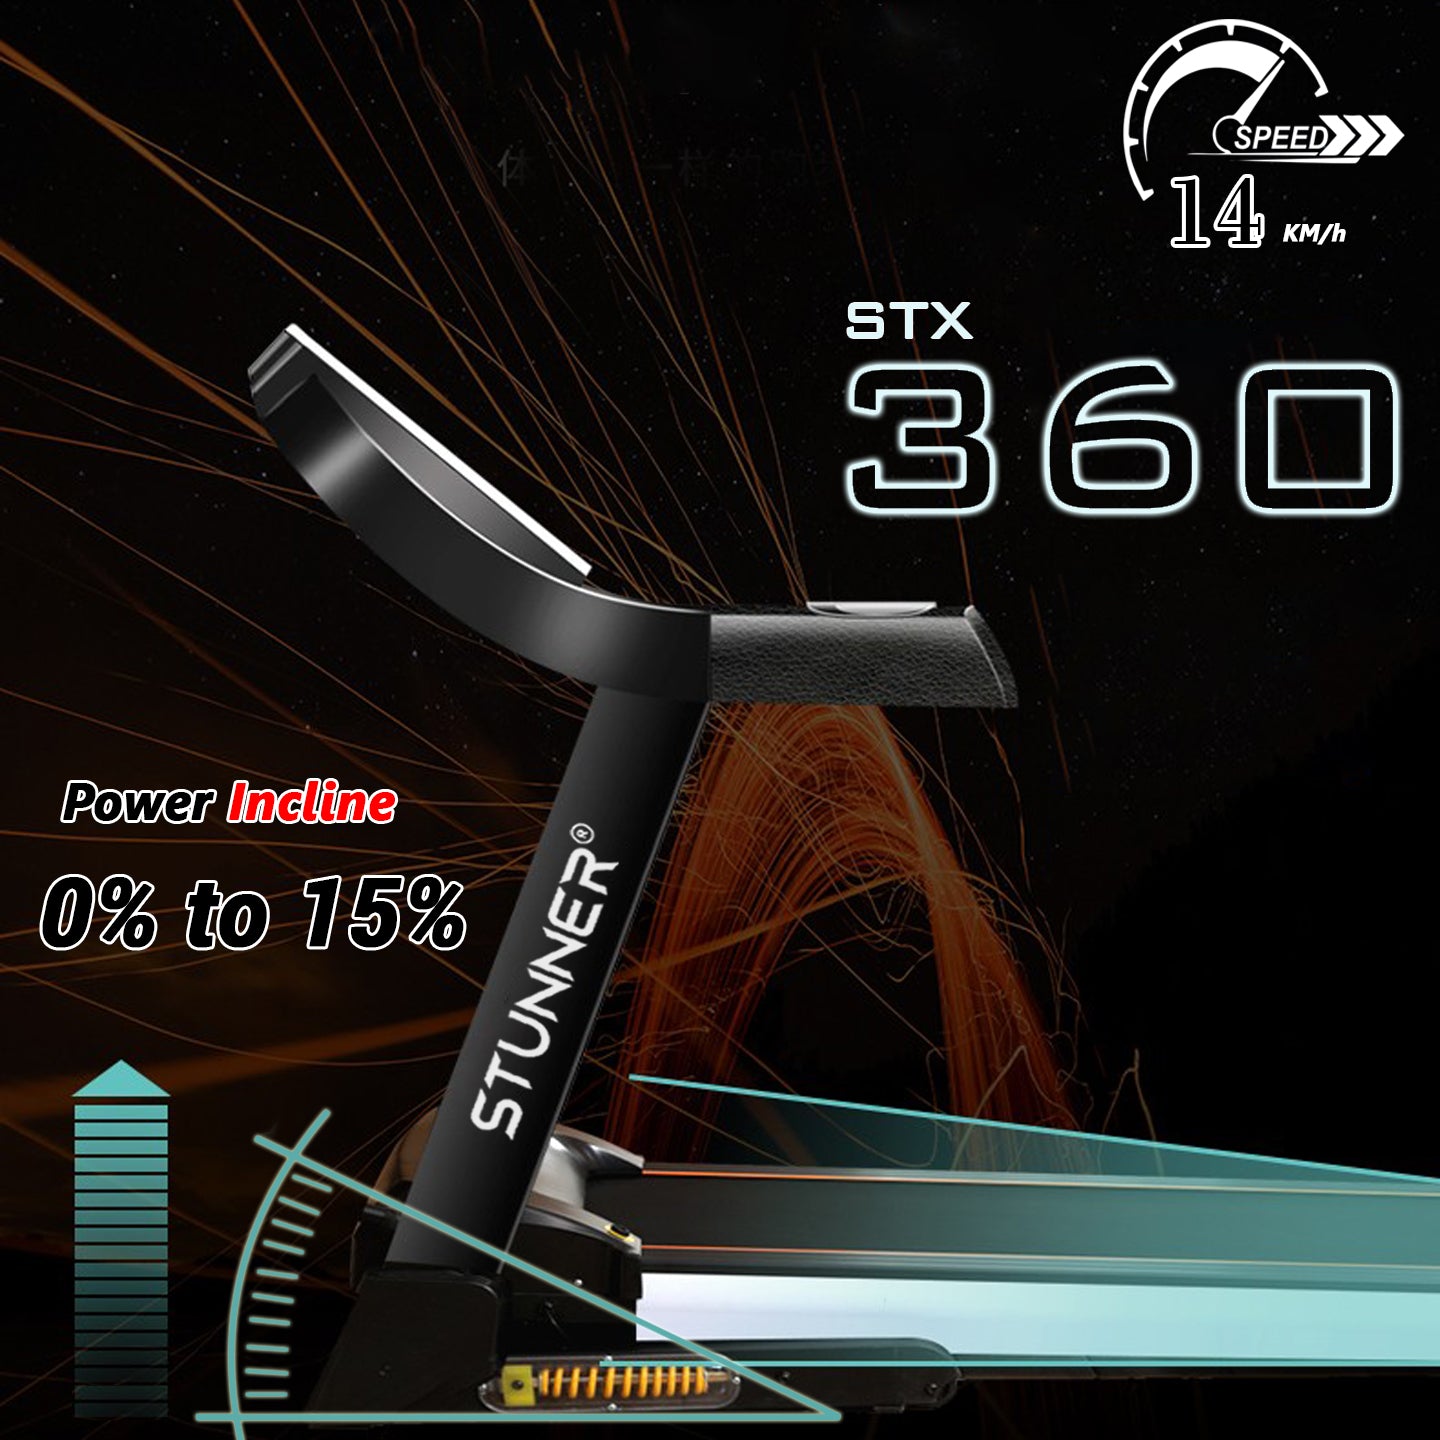 STX-360 Motorised Treadmill